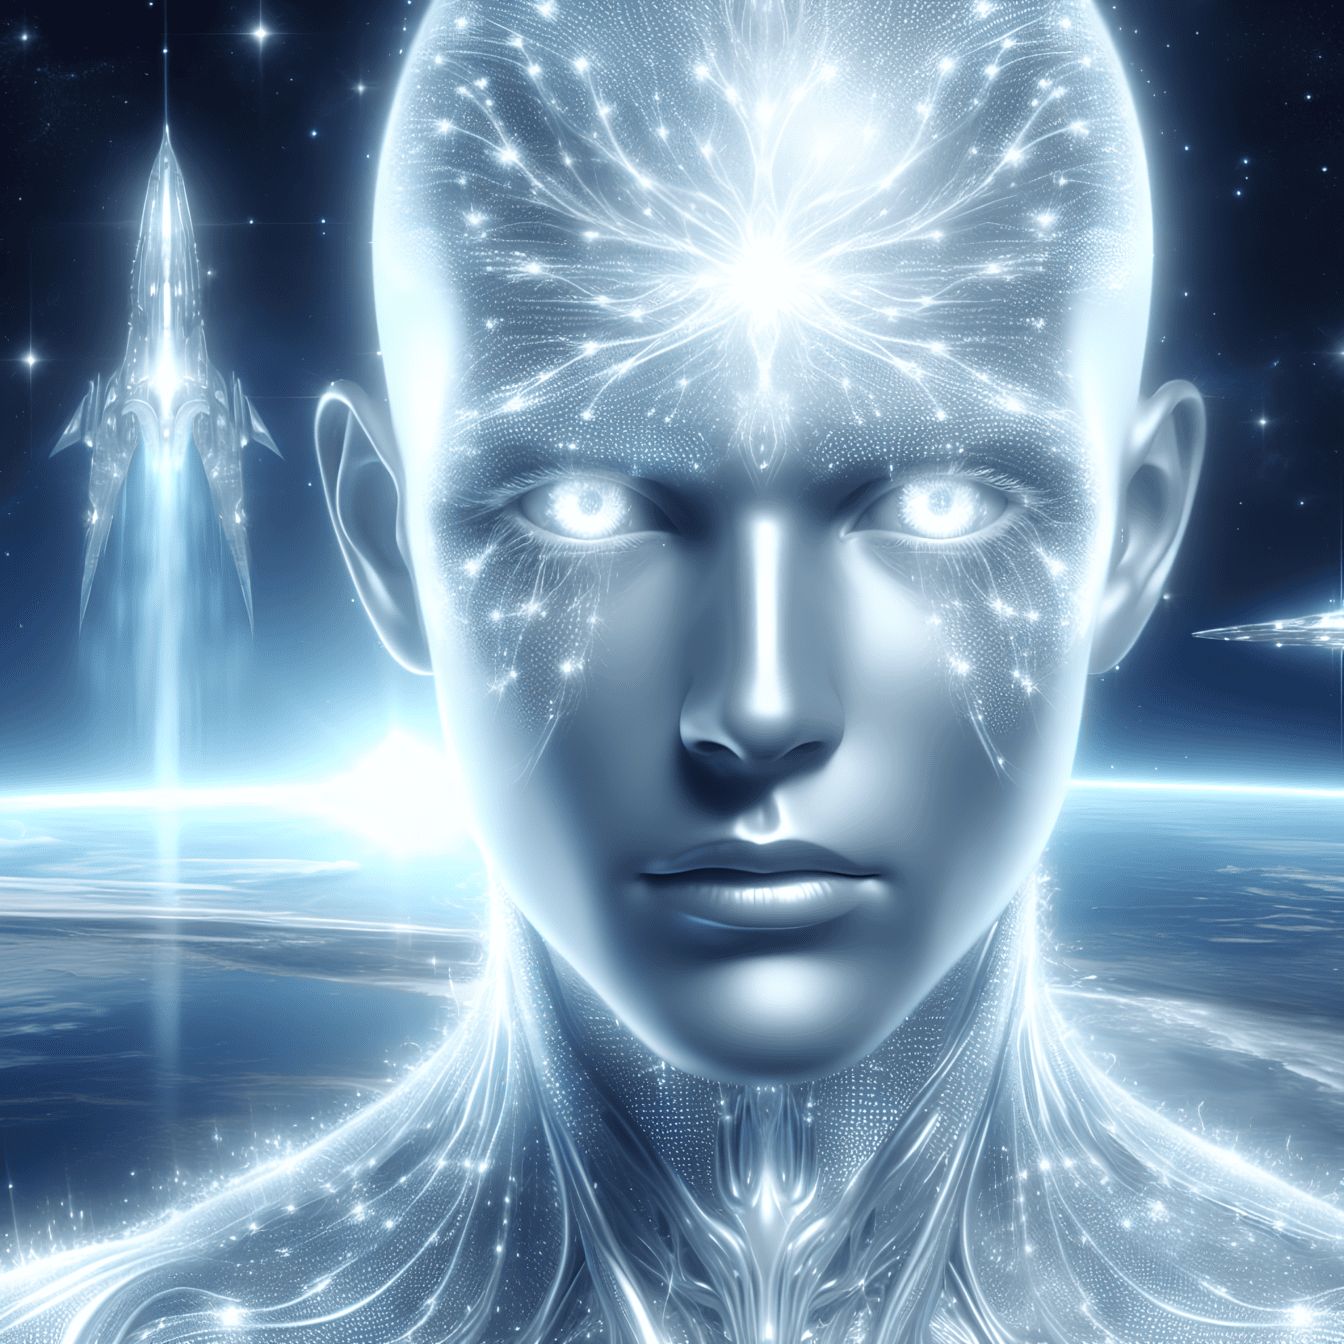 Het concept van kwantumvreemdeling, portret van een kunstmatige intelligentie buitenaardse cyborg met een ruimteschip op de achtergrond